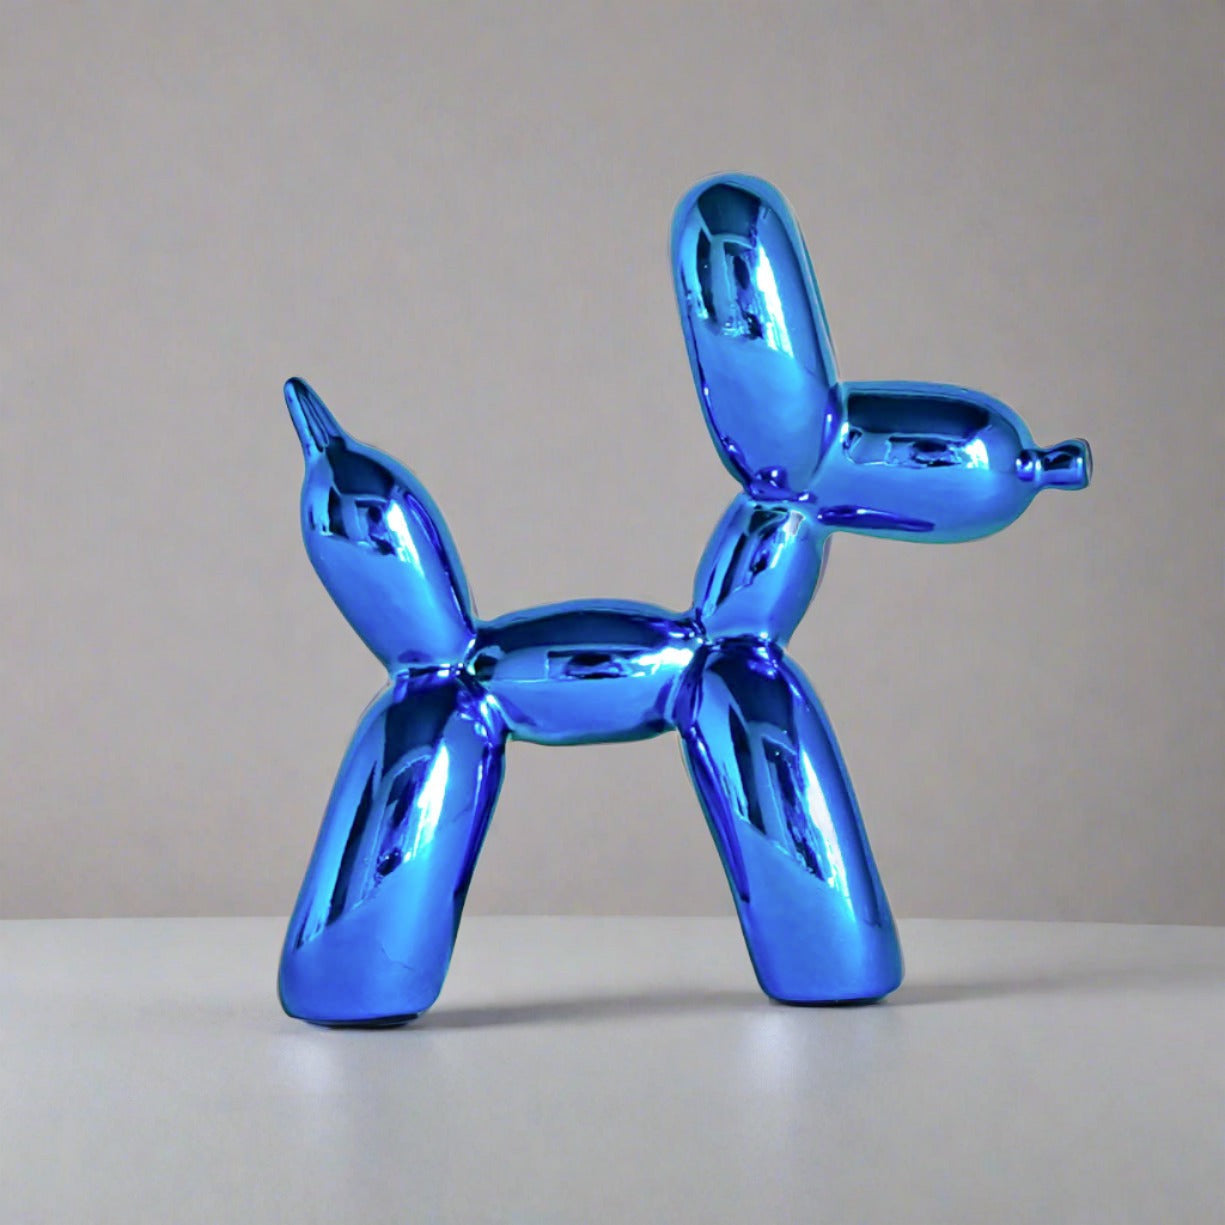 Living Room Ballon Dog Sculpture (BLUE)